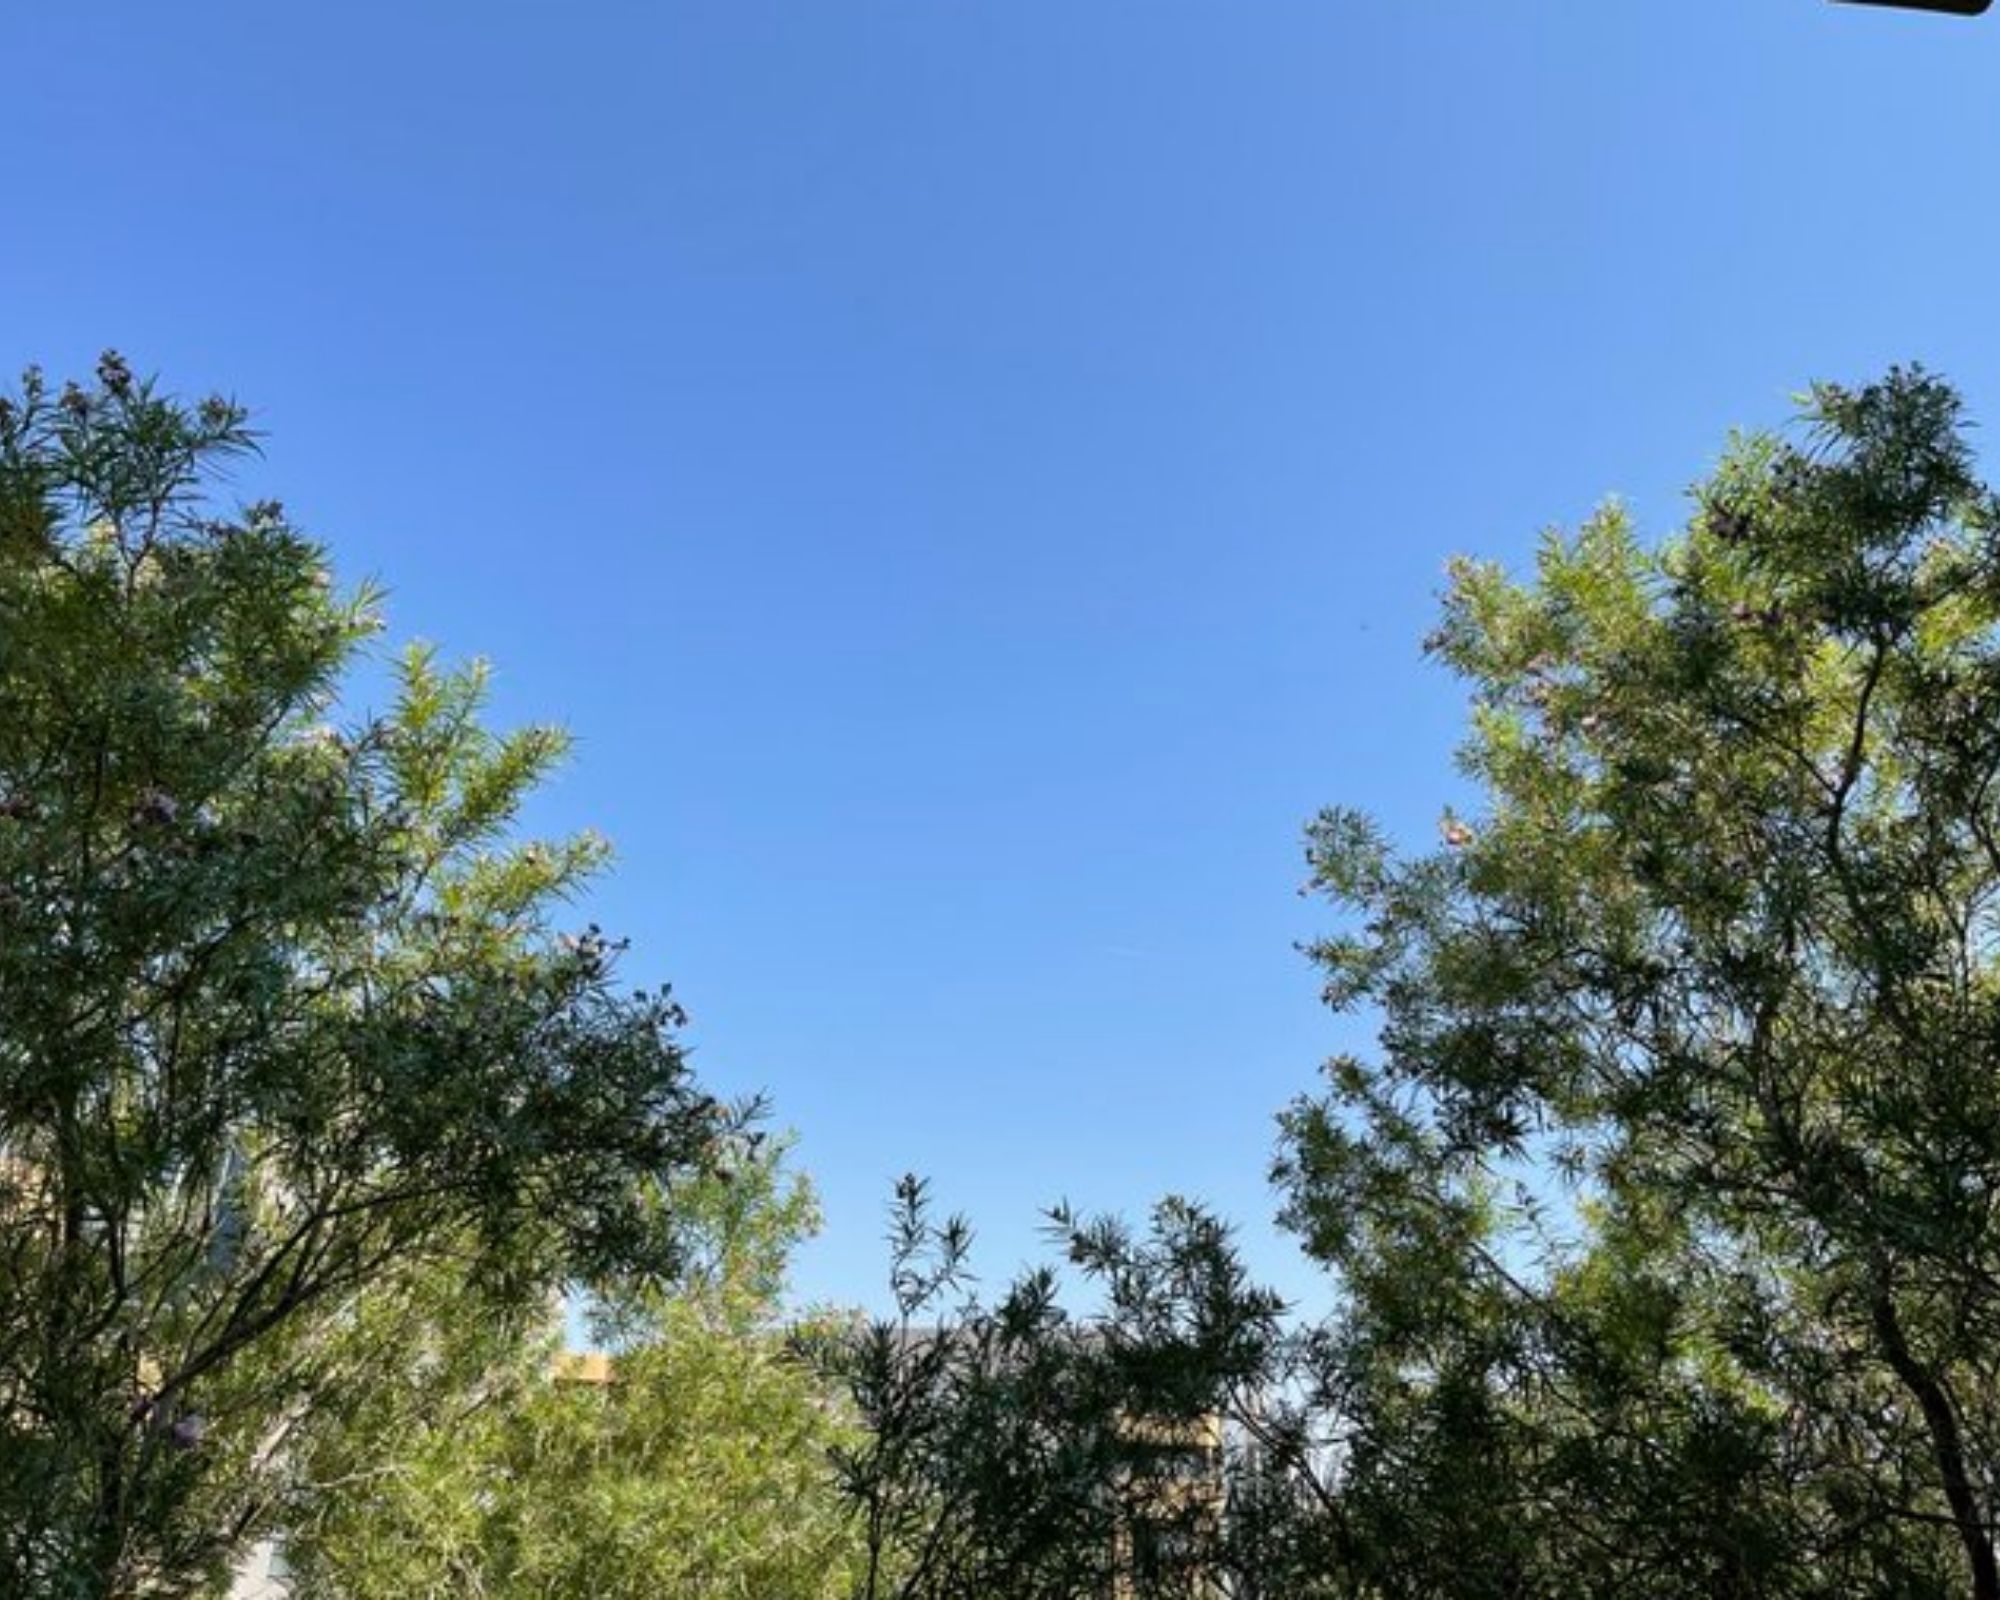 Blue sky over foliage